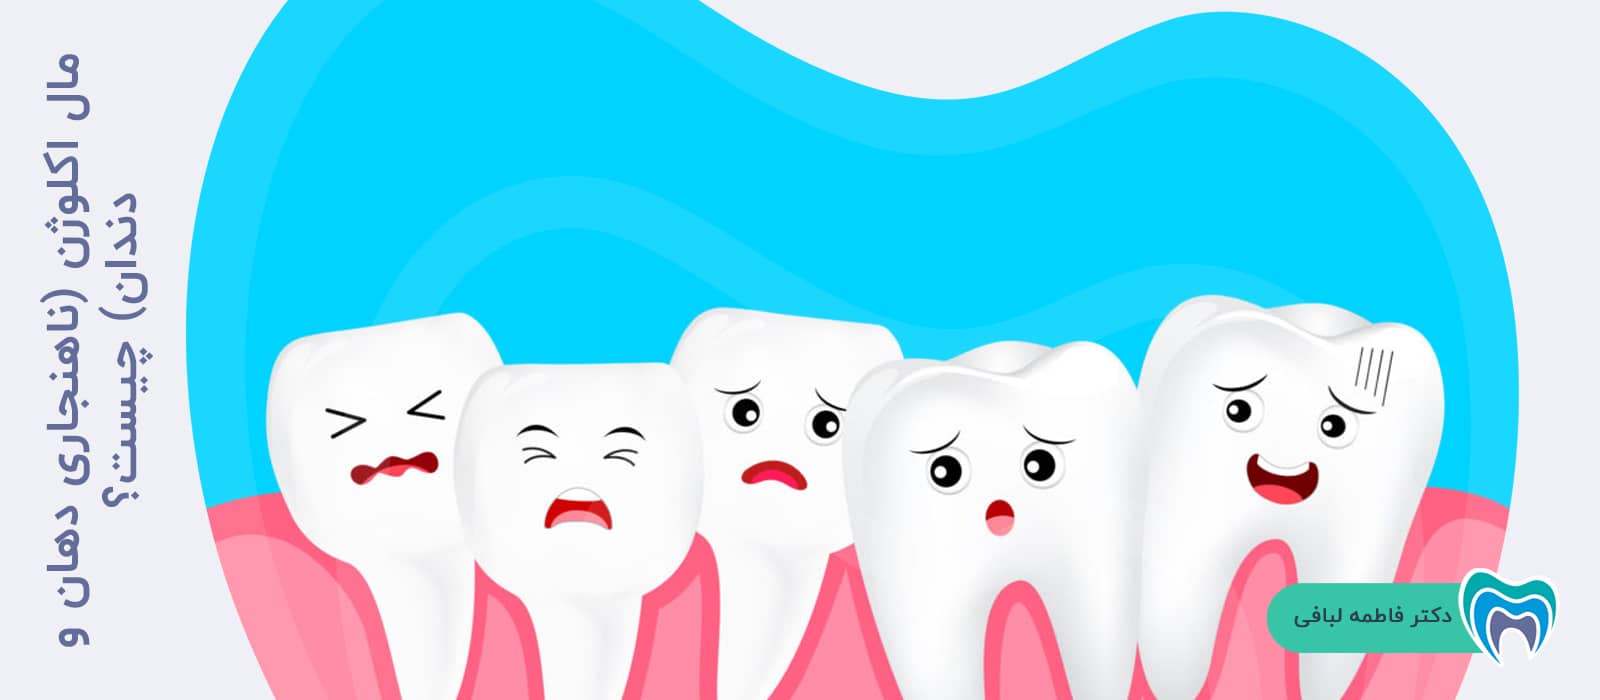 مال اکلوژن (ناهنجاری دهان و دندان) چیست؟